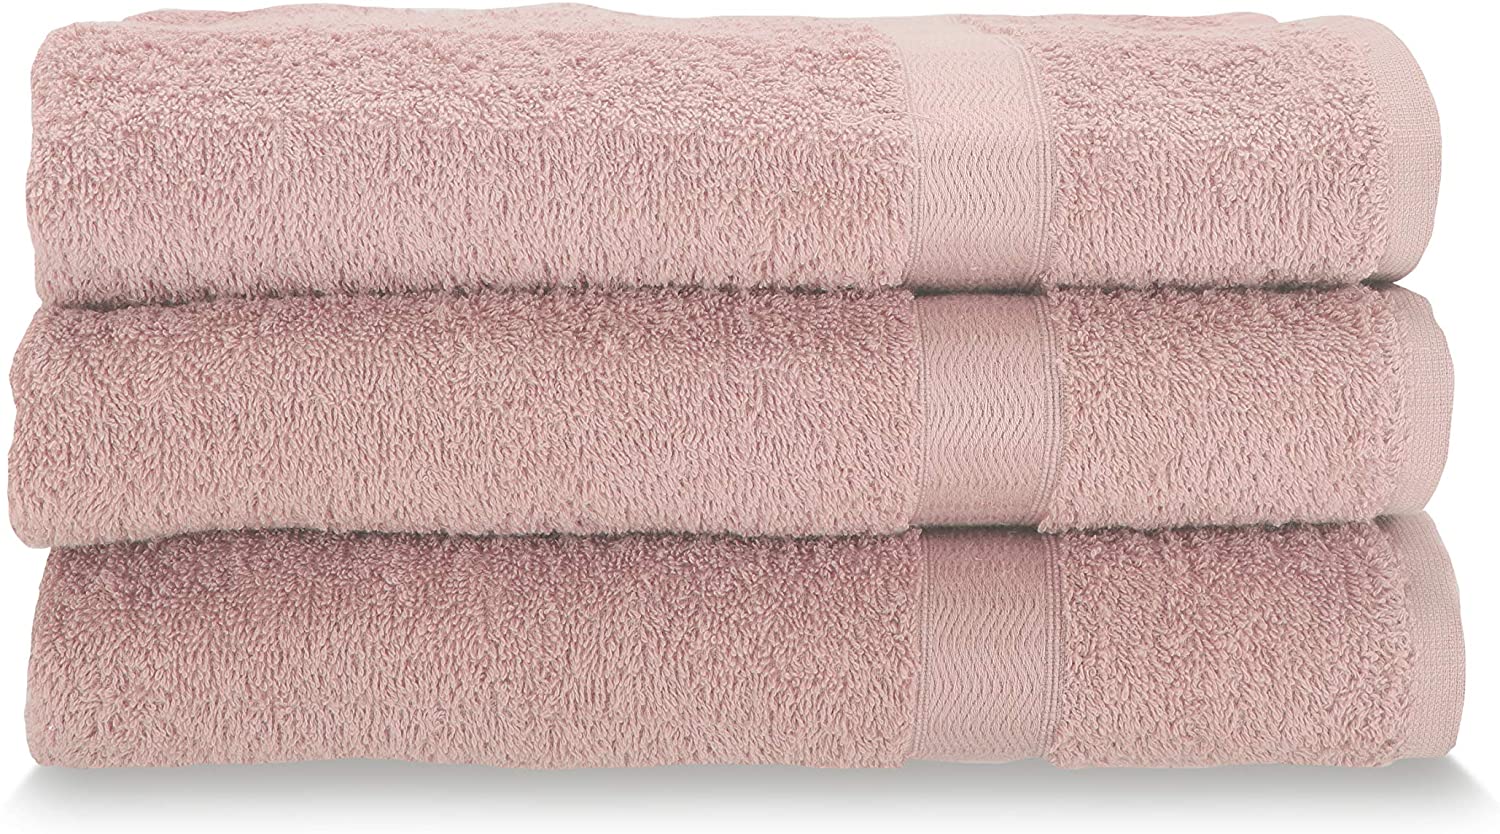 Gabel Asciugamani Viso, Spugna di Puro Cotone, 60 x 100 cm,Set da 3 Pezzi